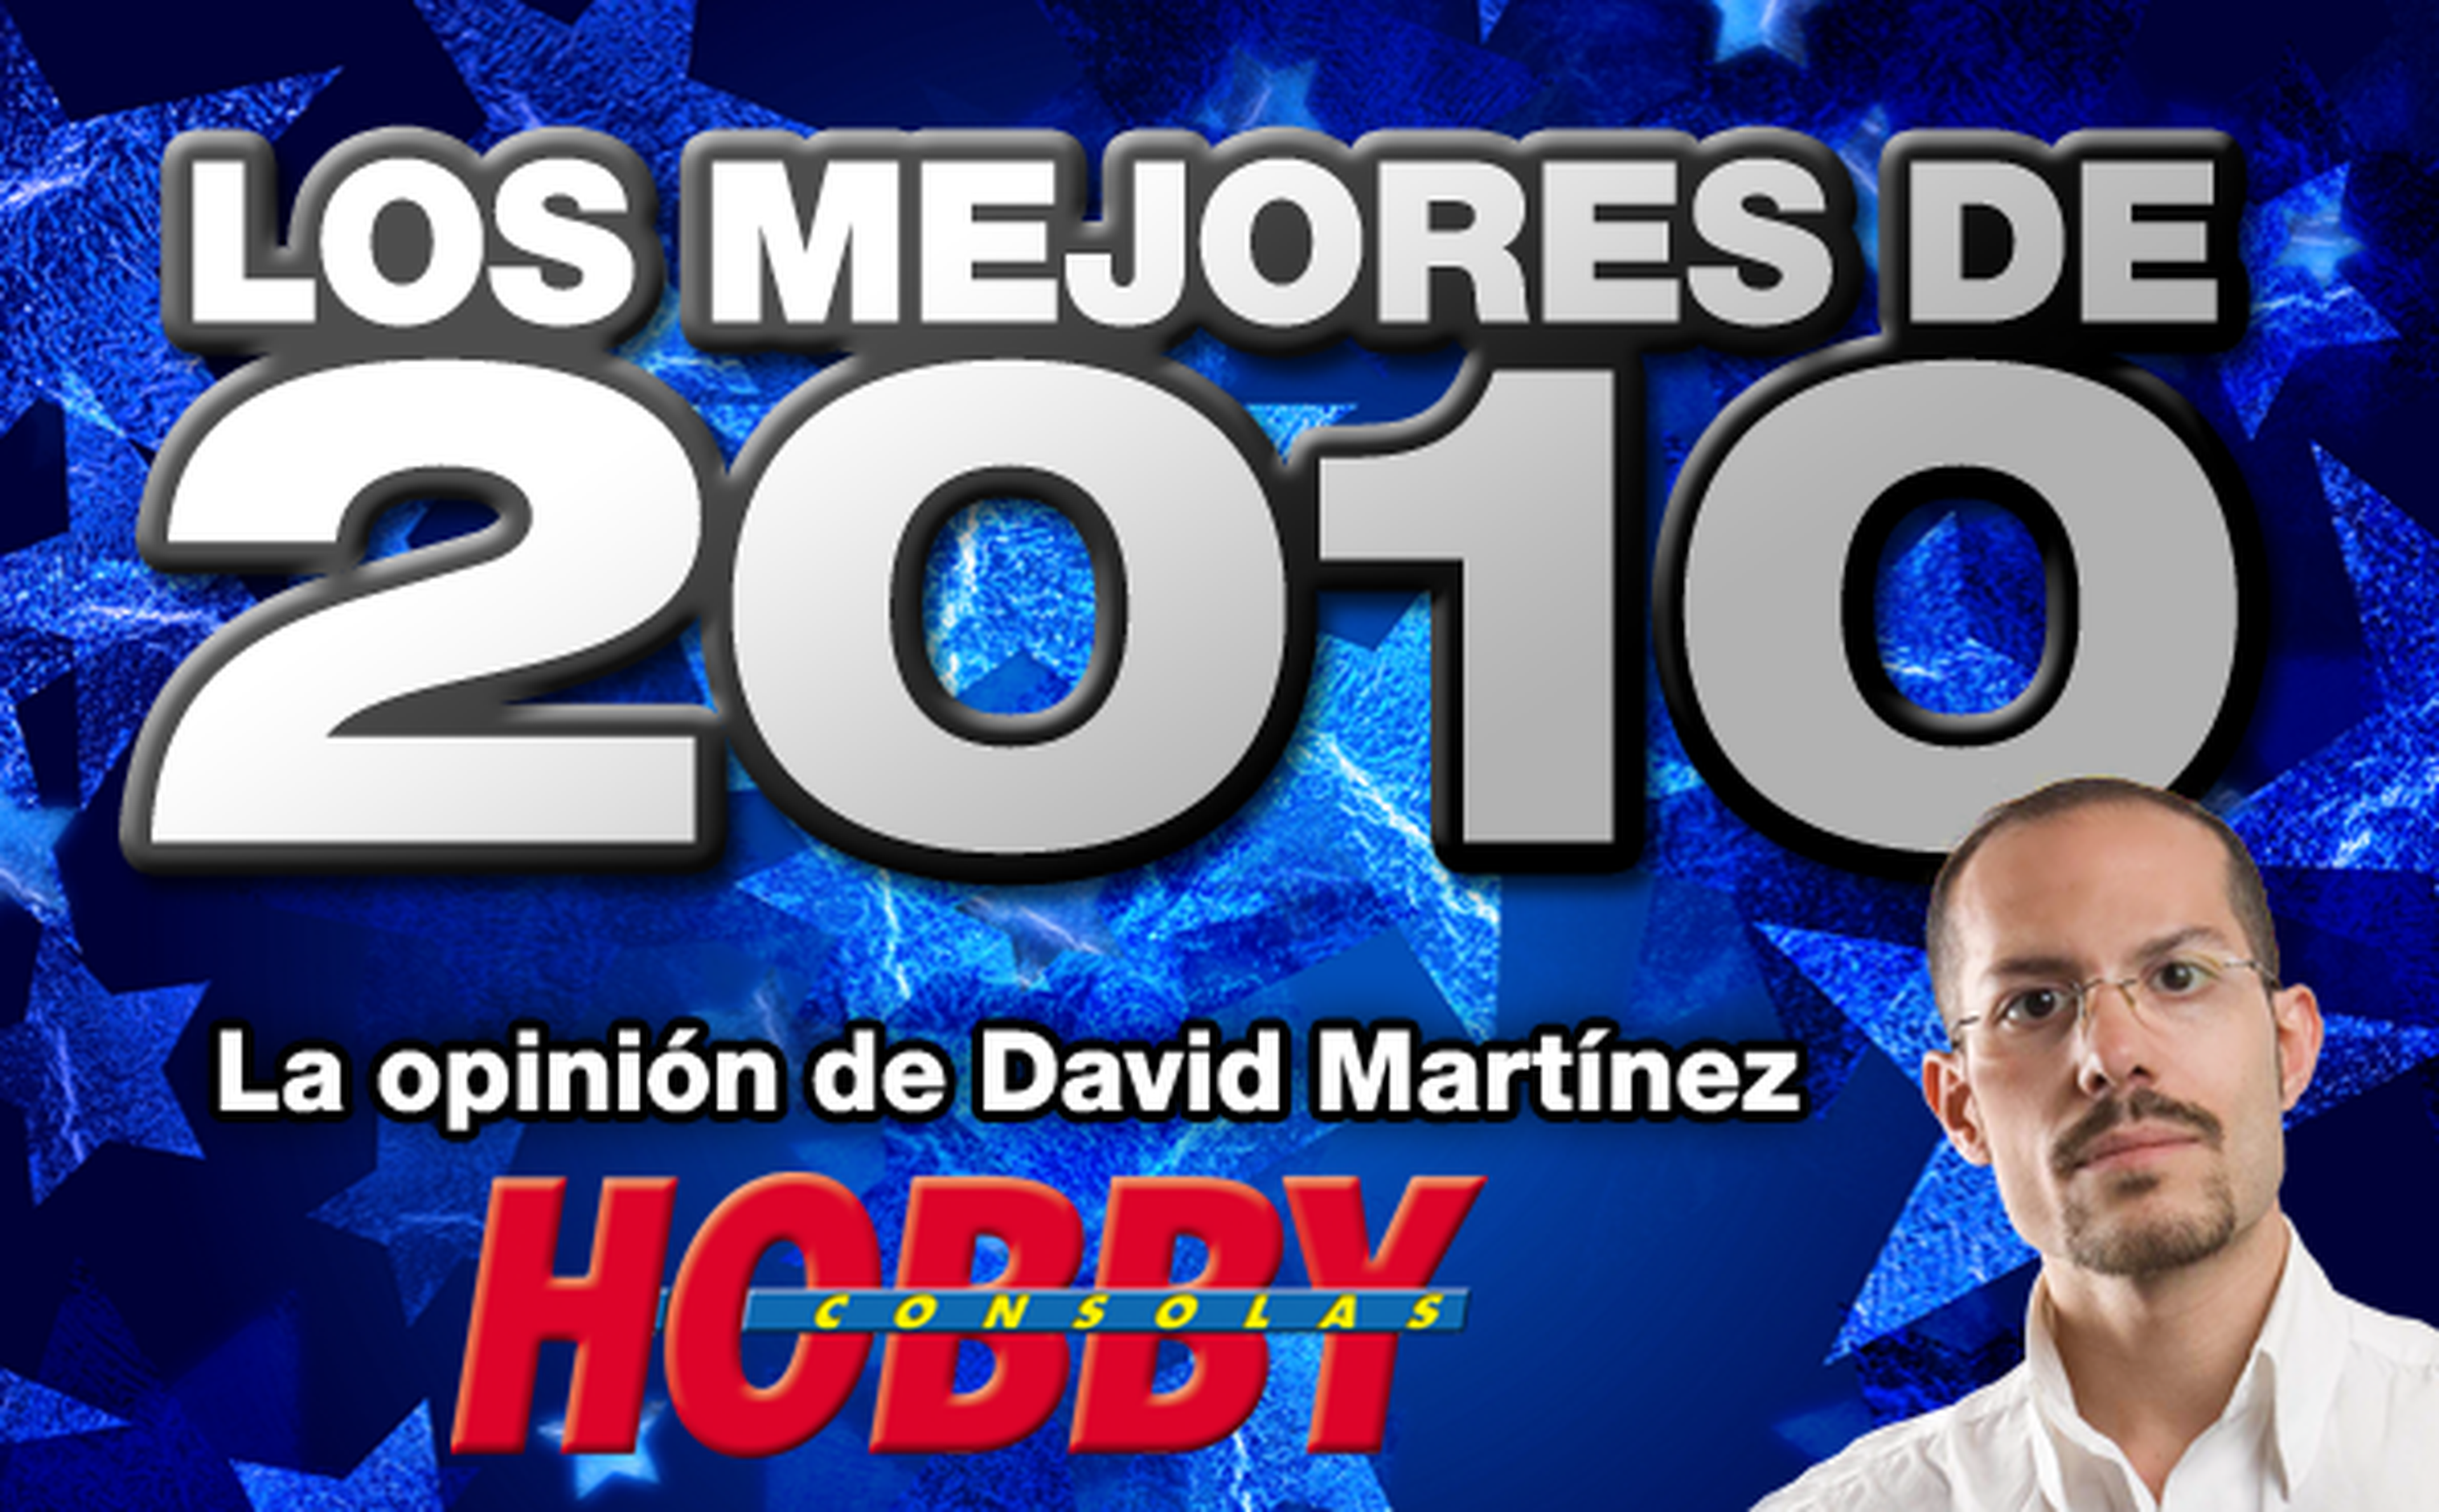 Los mejores de 2010: David Martínez